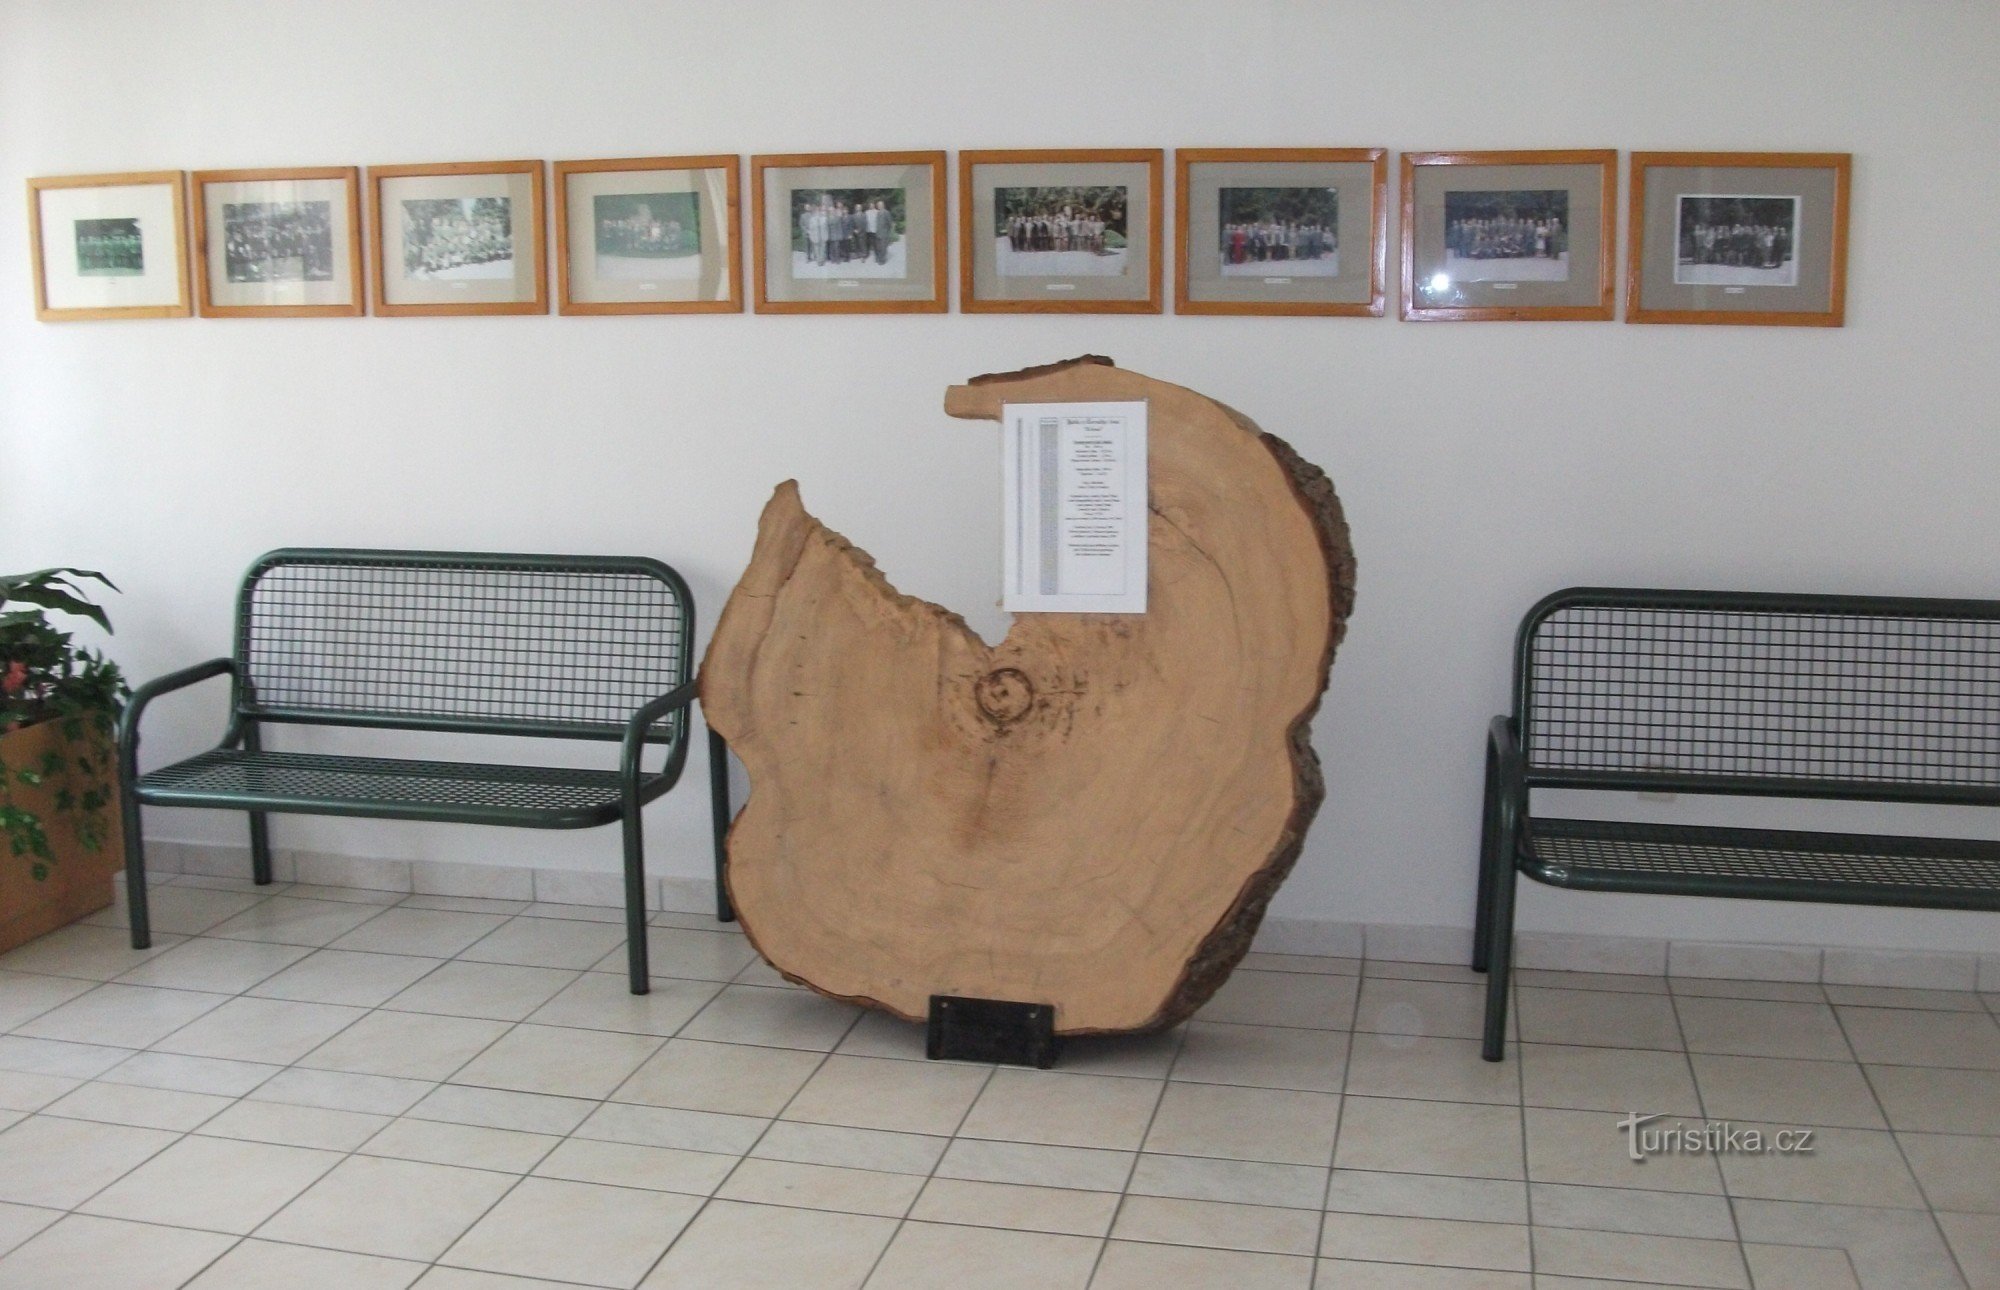 В коридоре студенты также могут встретить этот уникальный образец дерева.